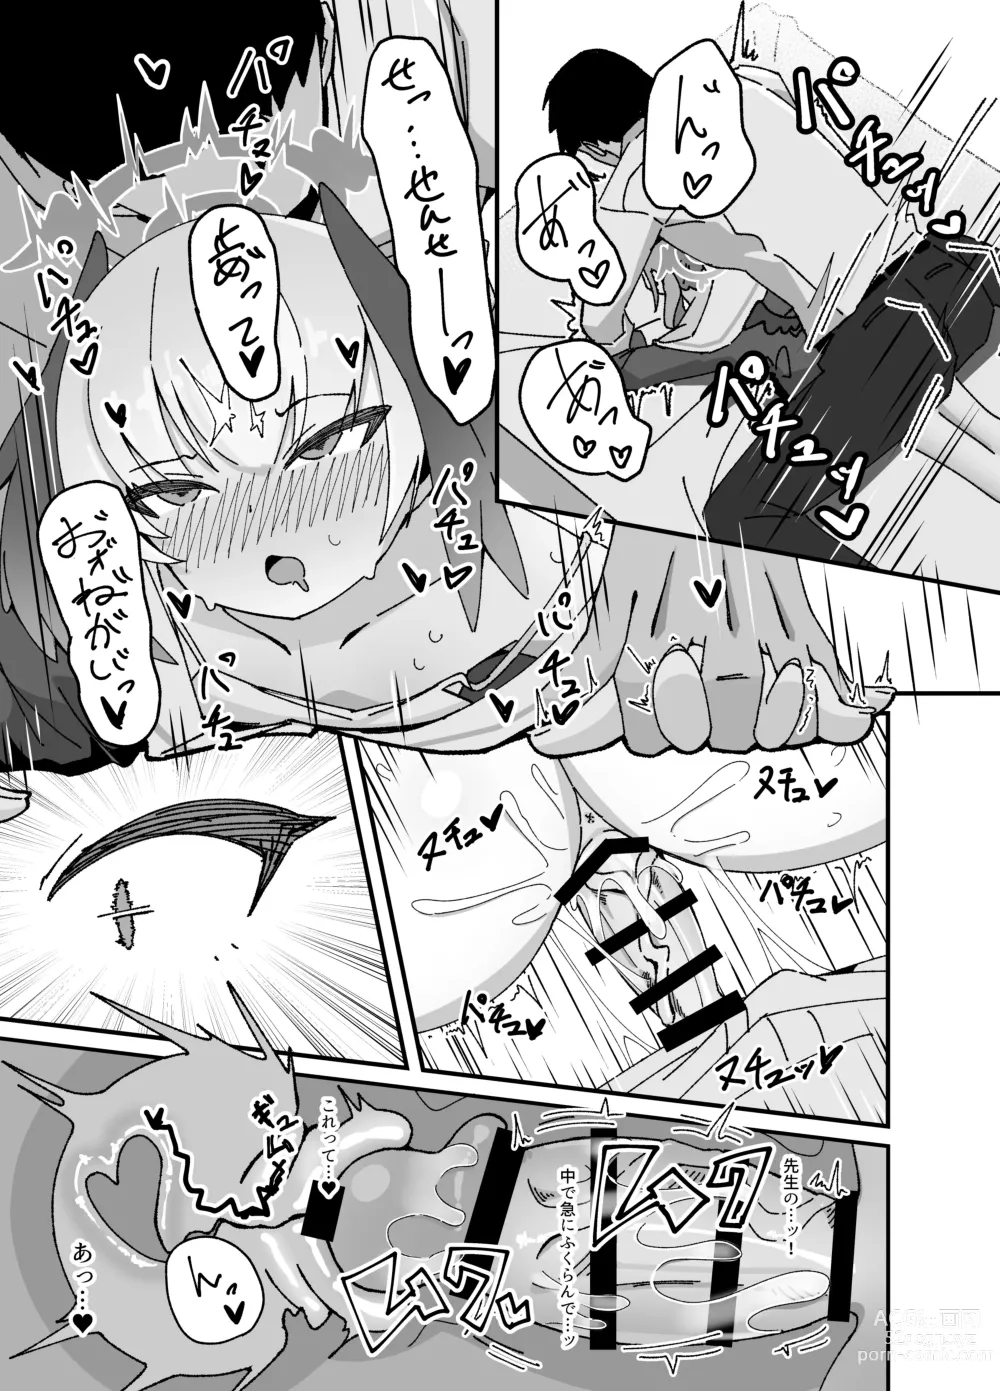 Page 13 of doujinshi Anna Koto ya Konna Koto mo Watashi no Omou ga Mama!?